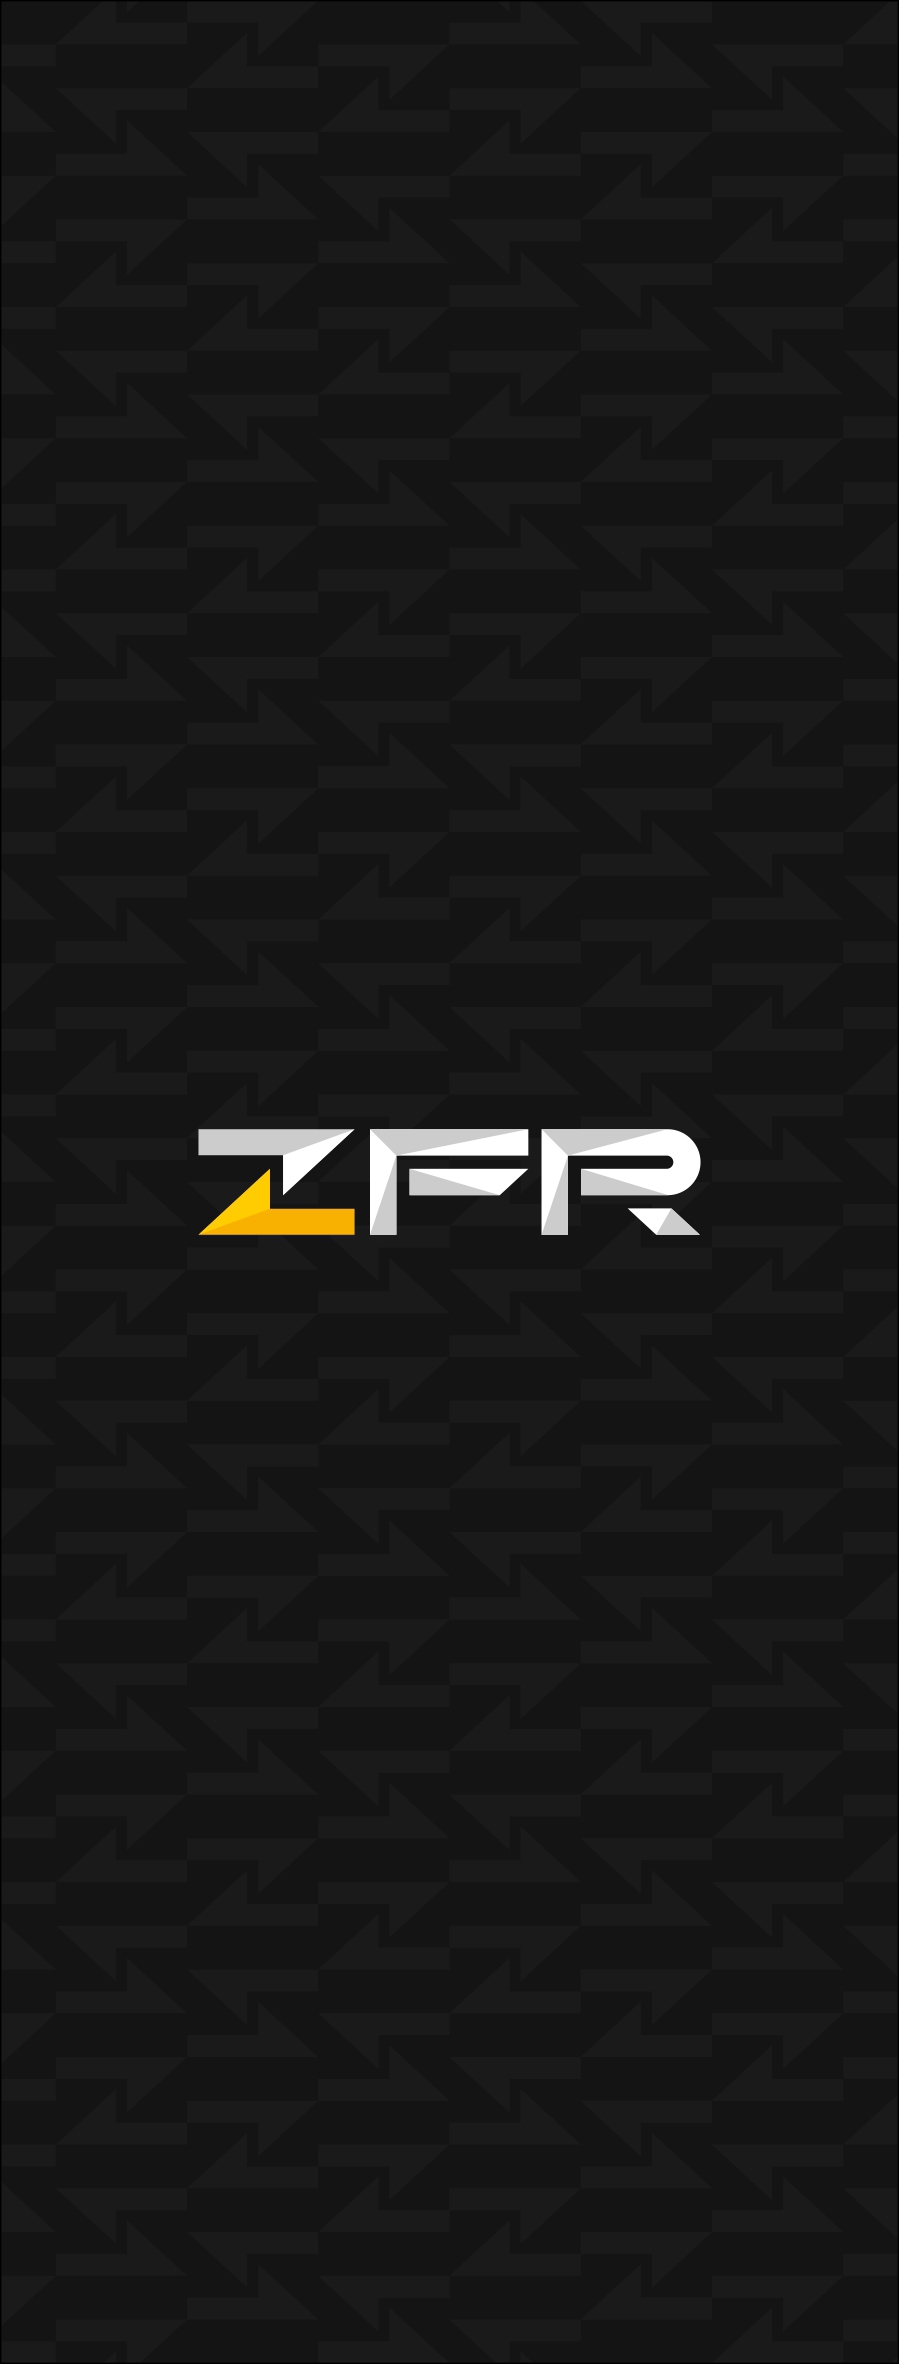 Branding for ZFR